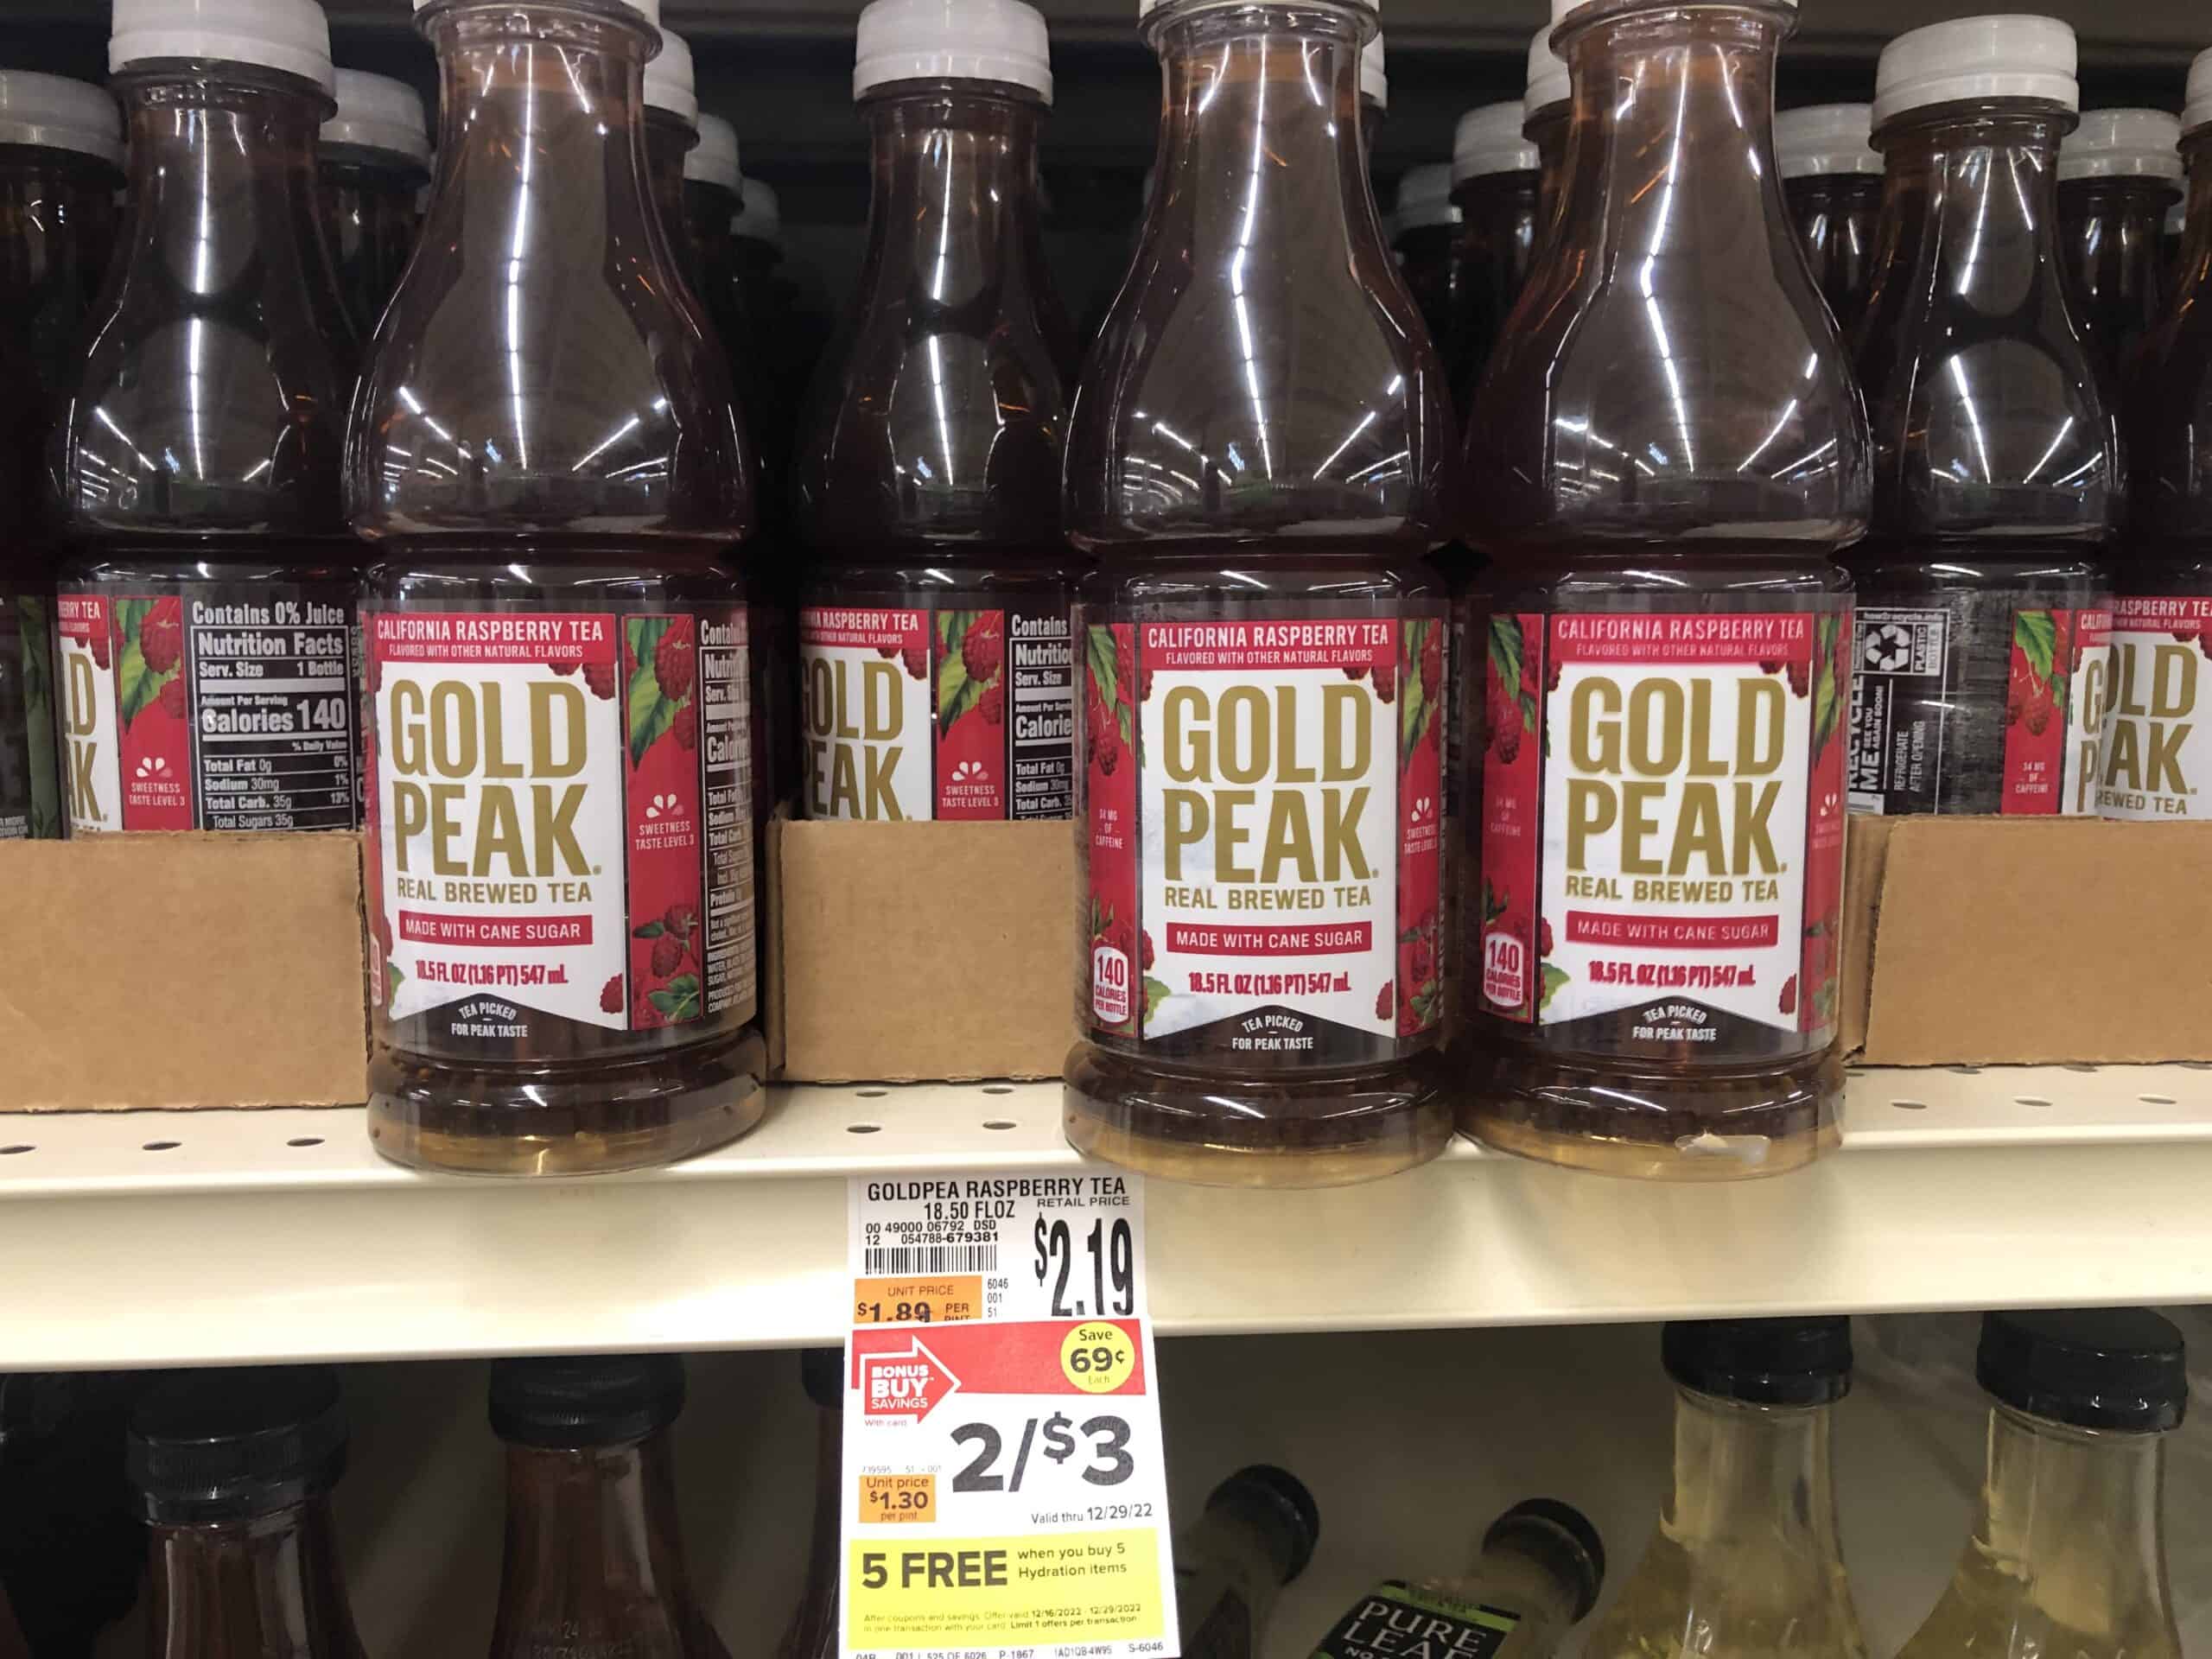 Giant Deal on Gold Peak Drinks